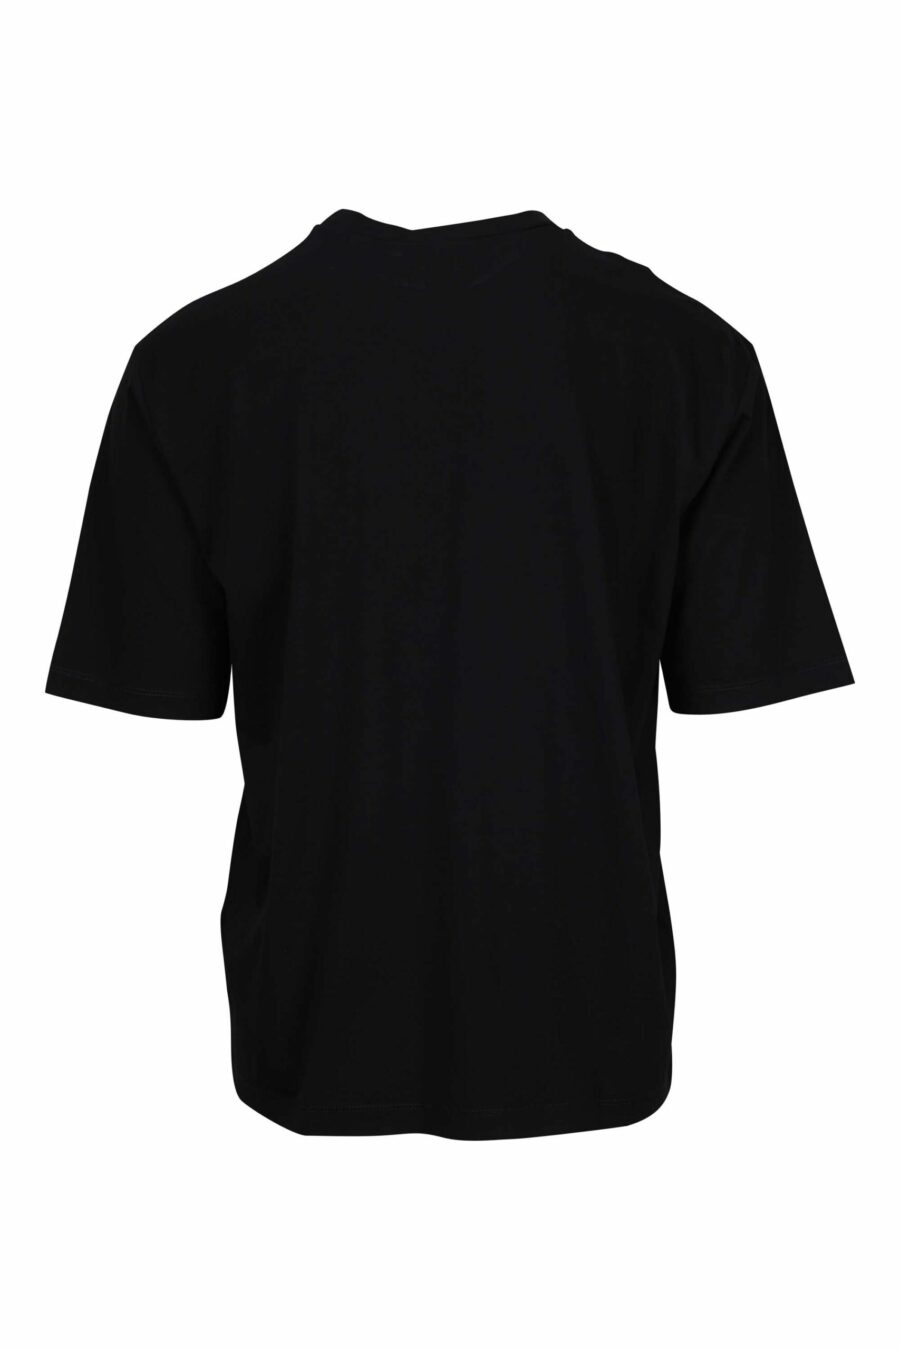 Schwarzes Oversize-T-Shirt mit Kreditkartenlogo darunter - 8054148265618 1 skaliert